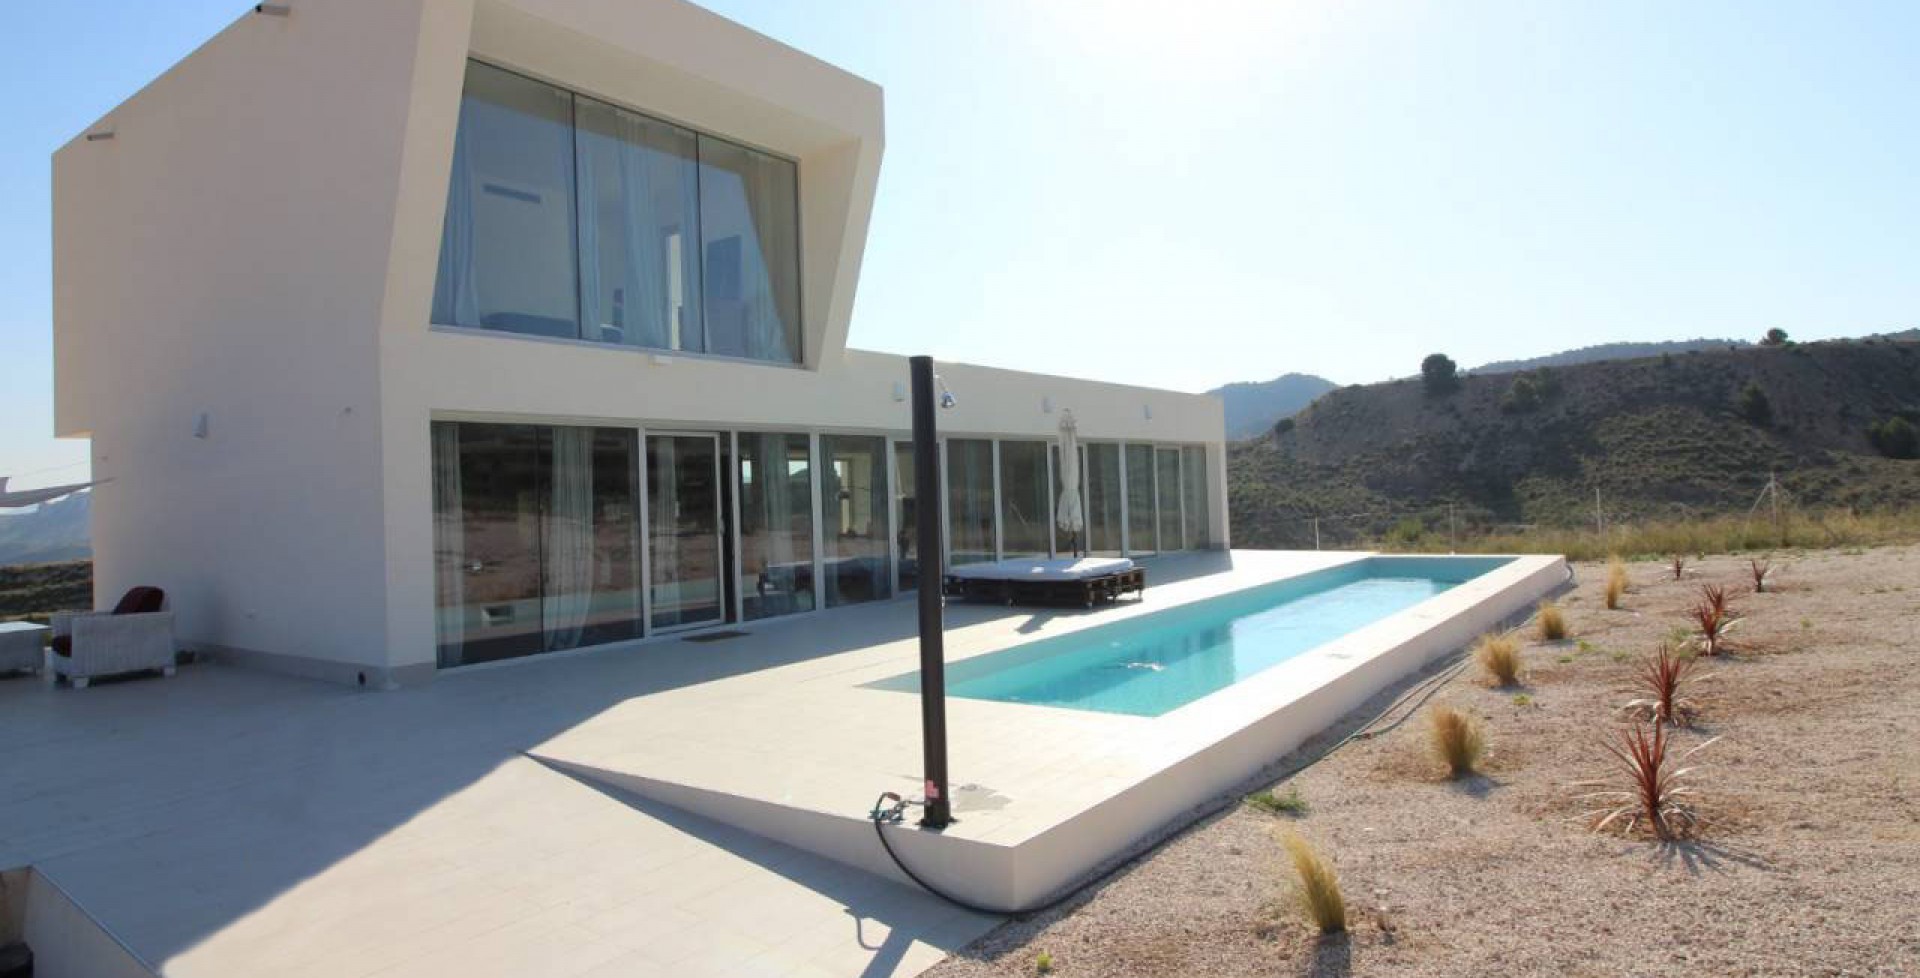 espectacular villa moderna de diseño con piscina , Ricote, Murcia, España